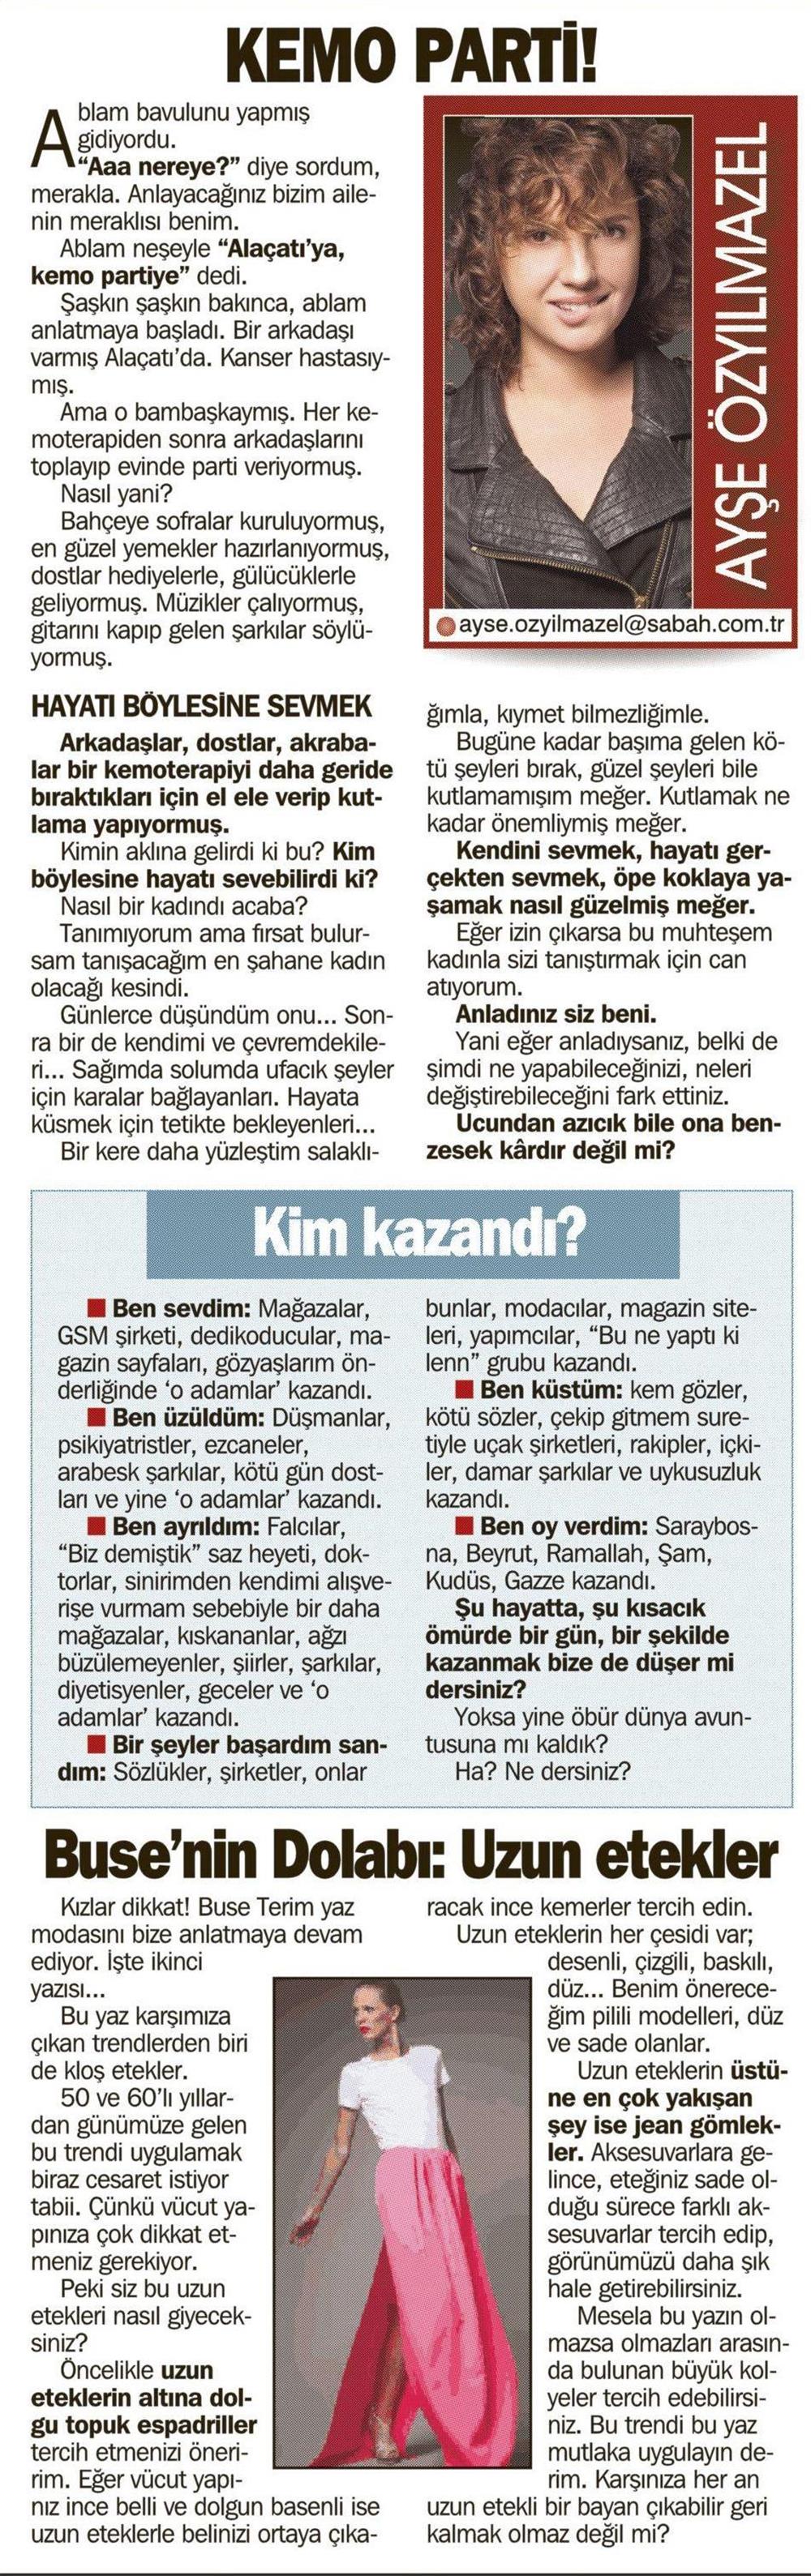 Sabah Gazetesi - Günaydın Eki - 14.06.2011